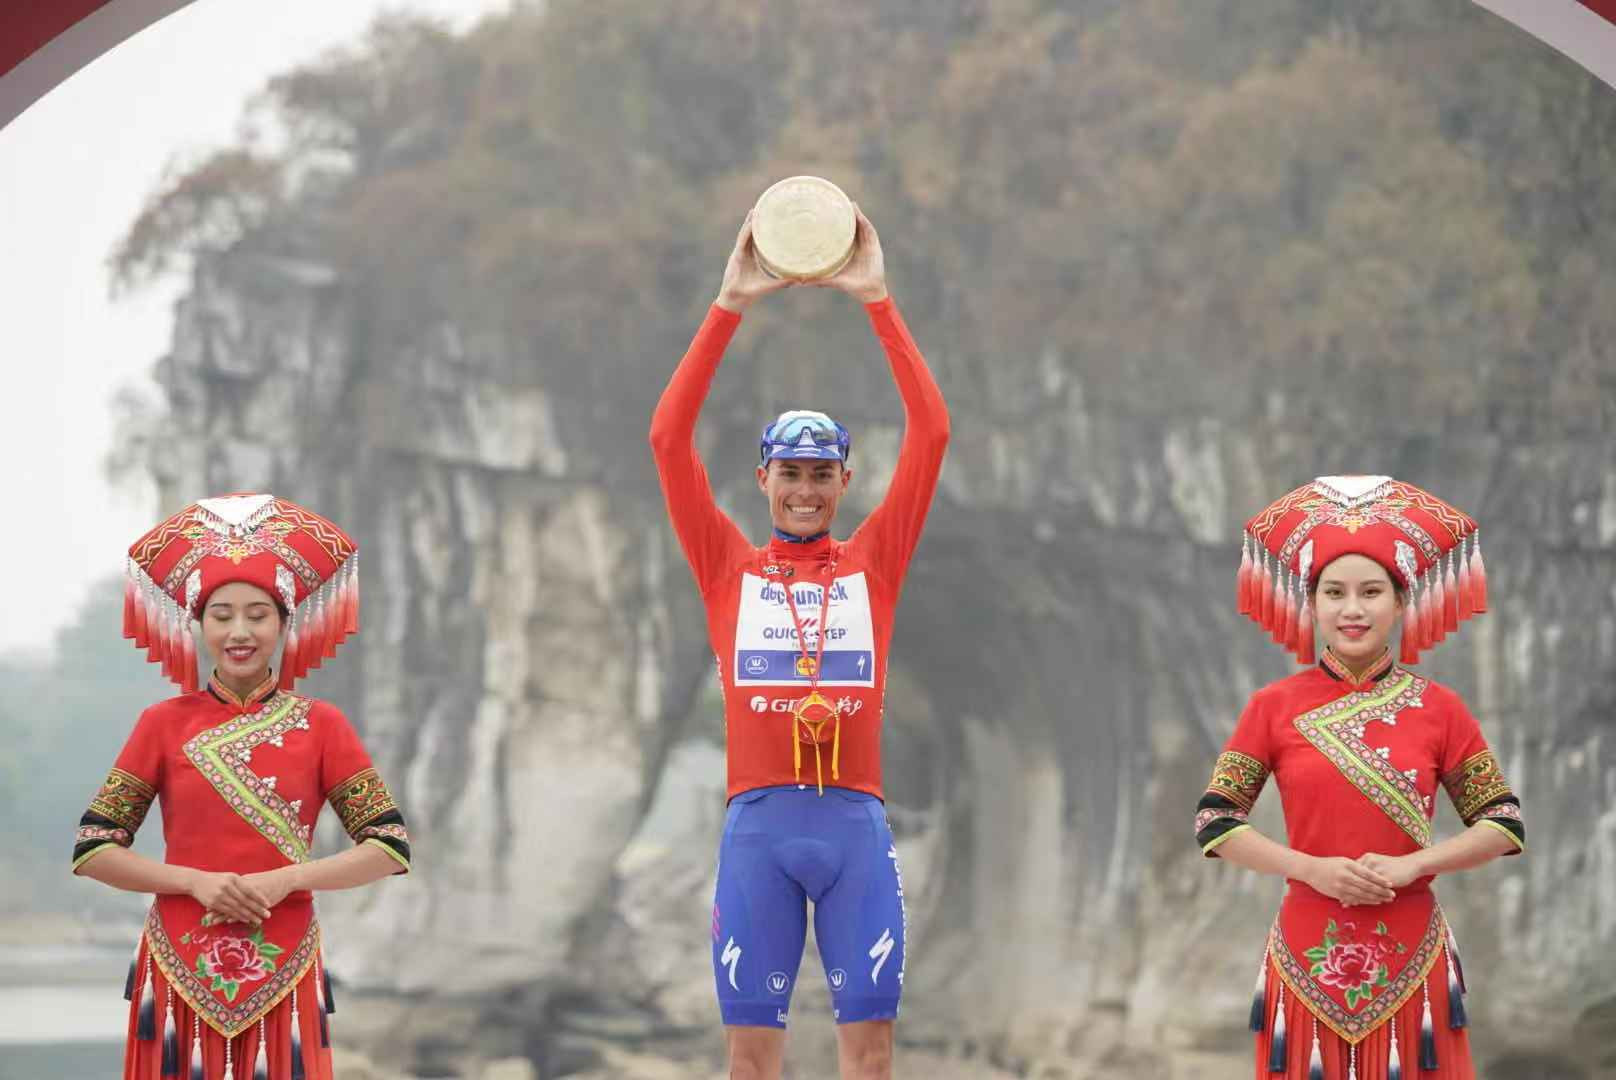 Spaniard Enric Mas won the International Cycling Union Tour of Guangxi by five seconds ©Tour of Guangxi